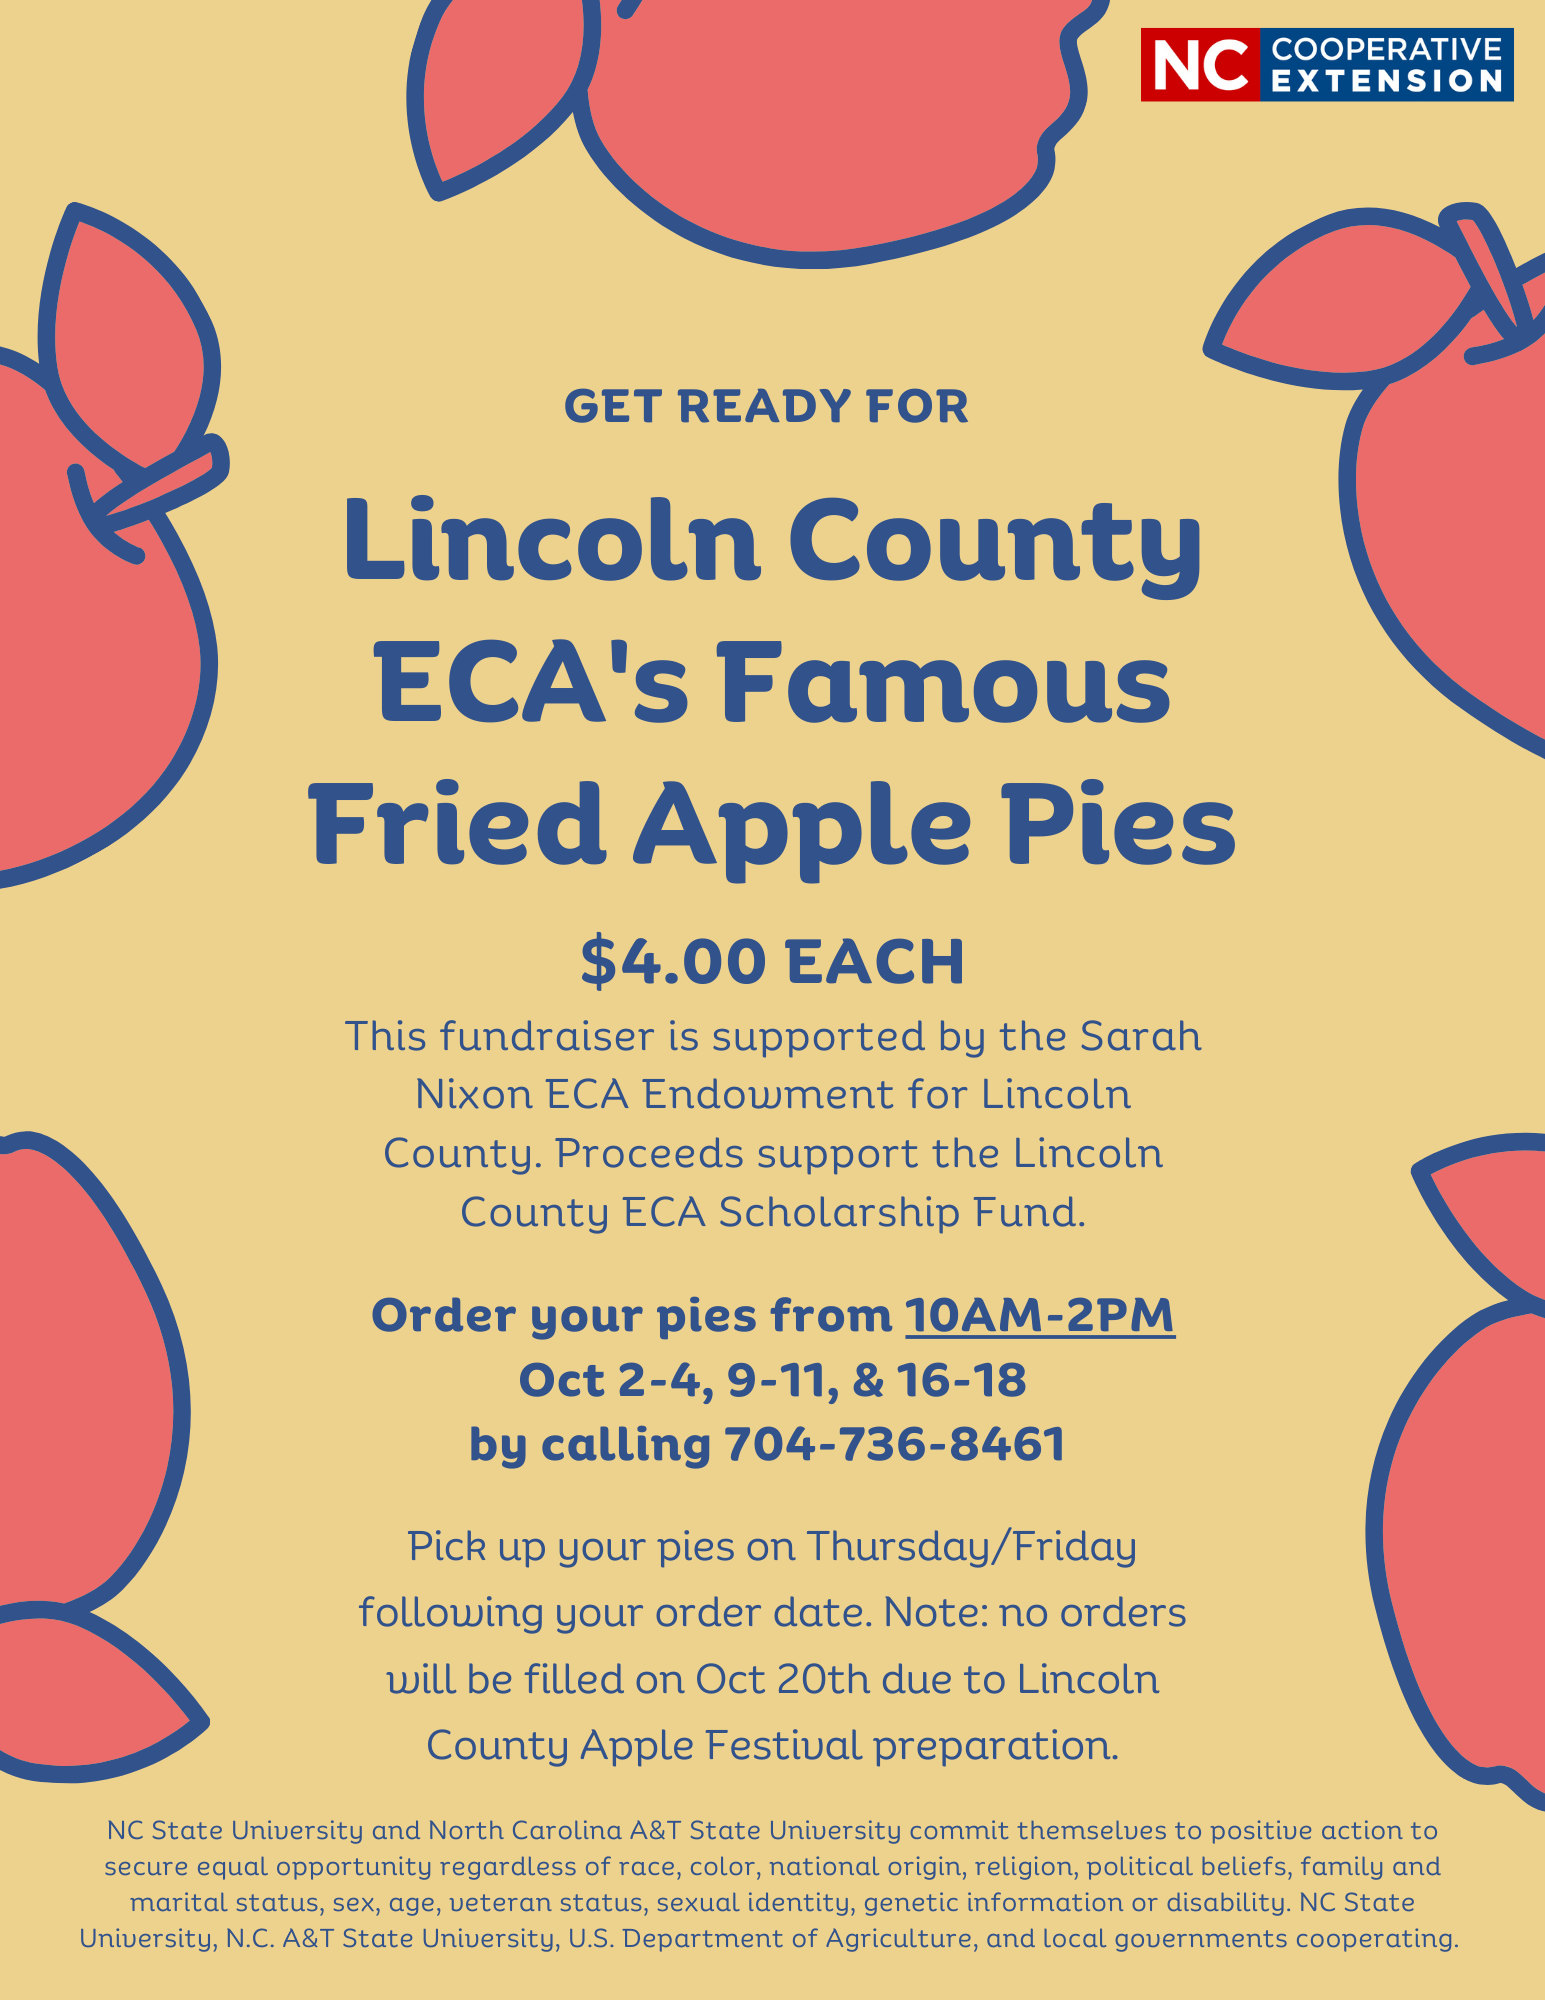 ECA fried apple pie fundraiser flyer